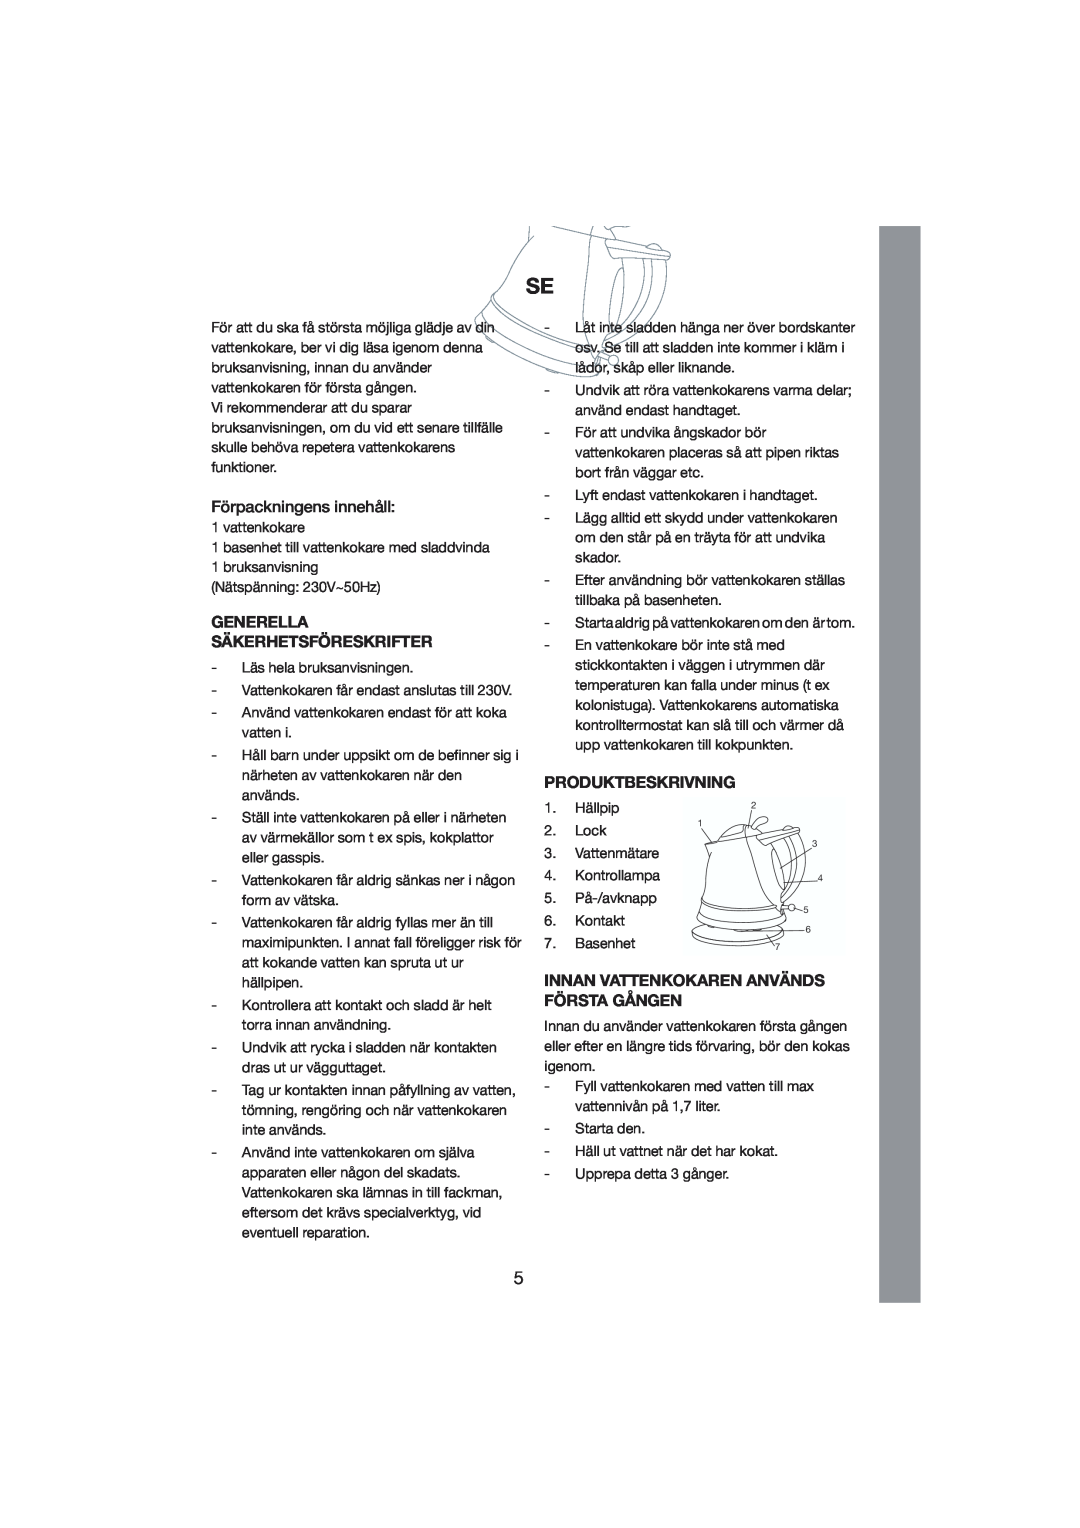 Melissa 245-018 manual Förpackningens innehåll, Generella Säkerhetsföreskrifter, Produktbeskrivning 